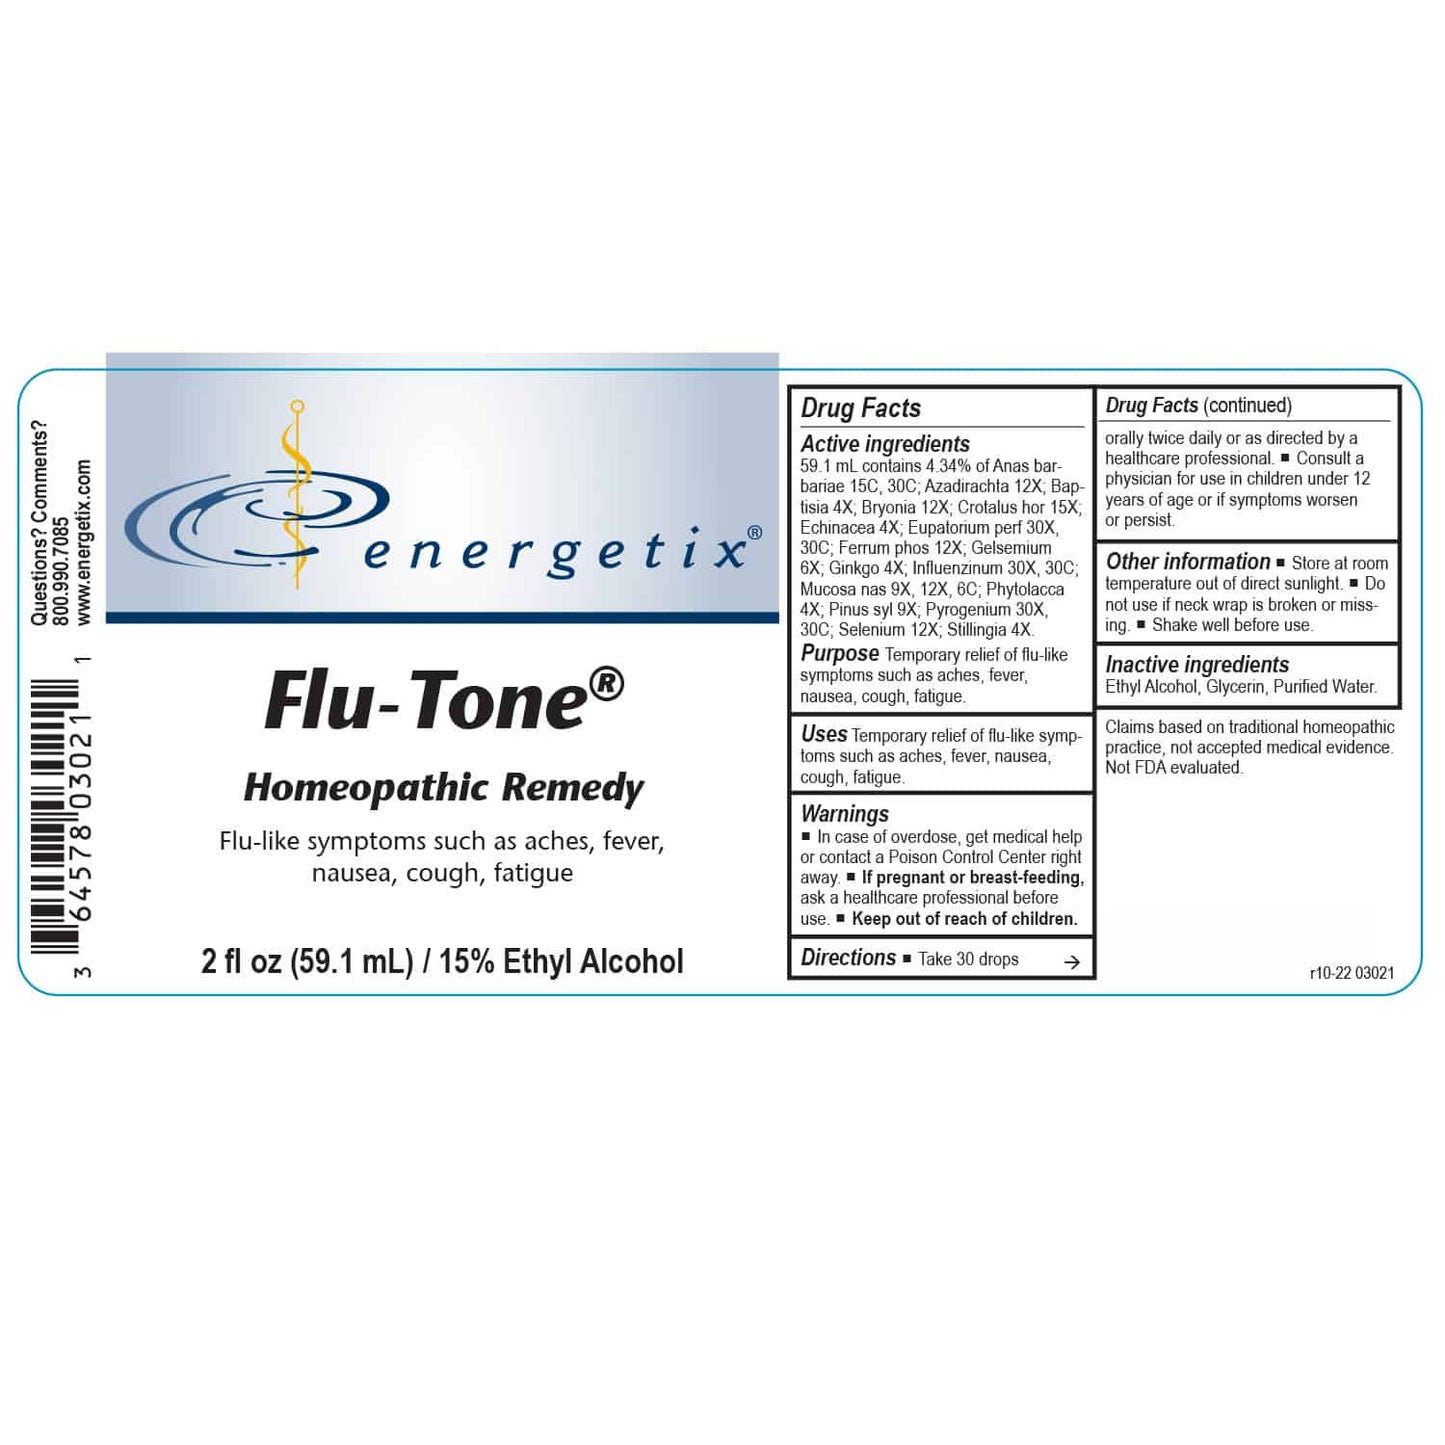 Flu-Tone®